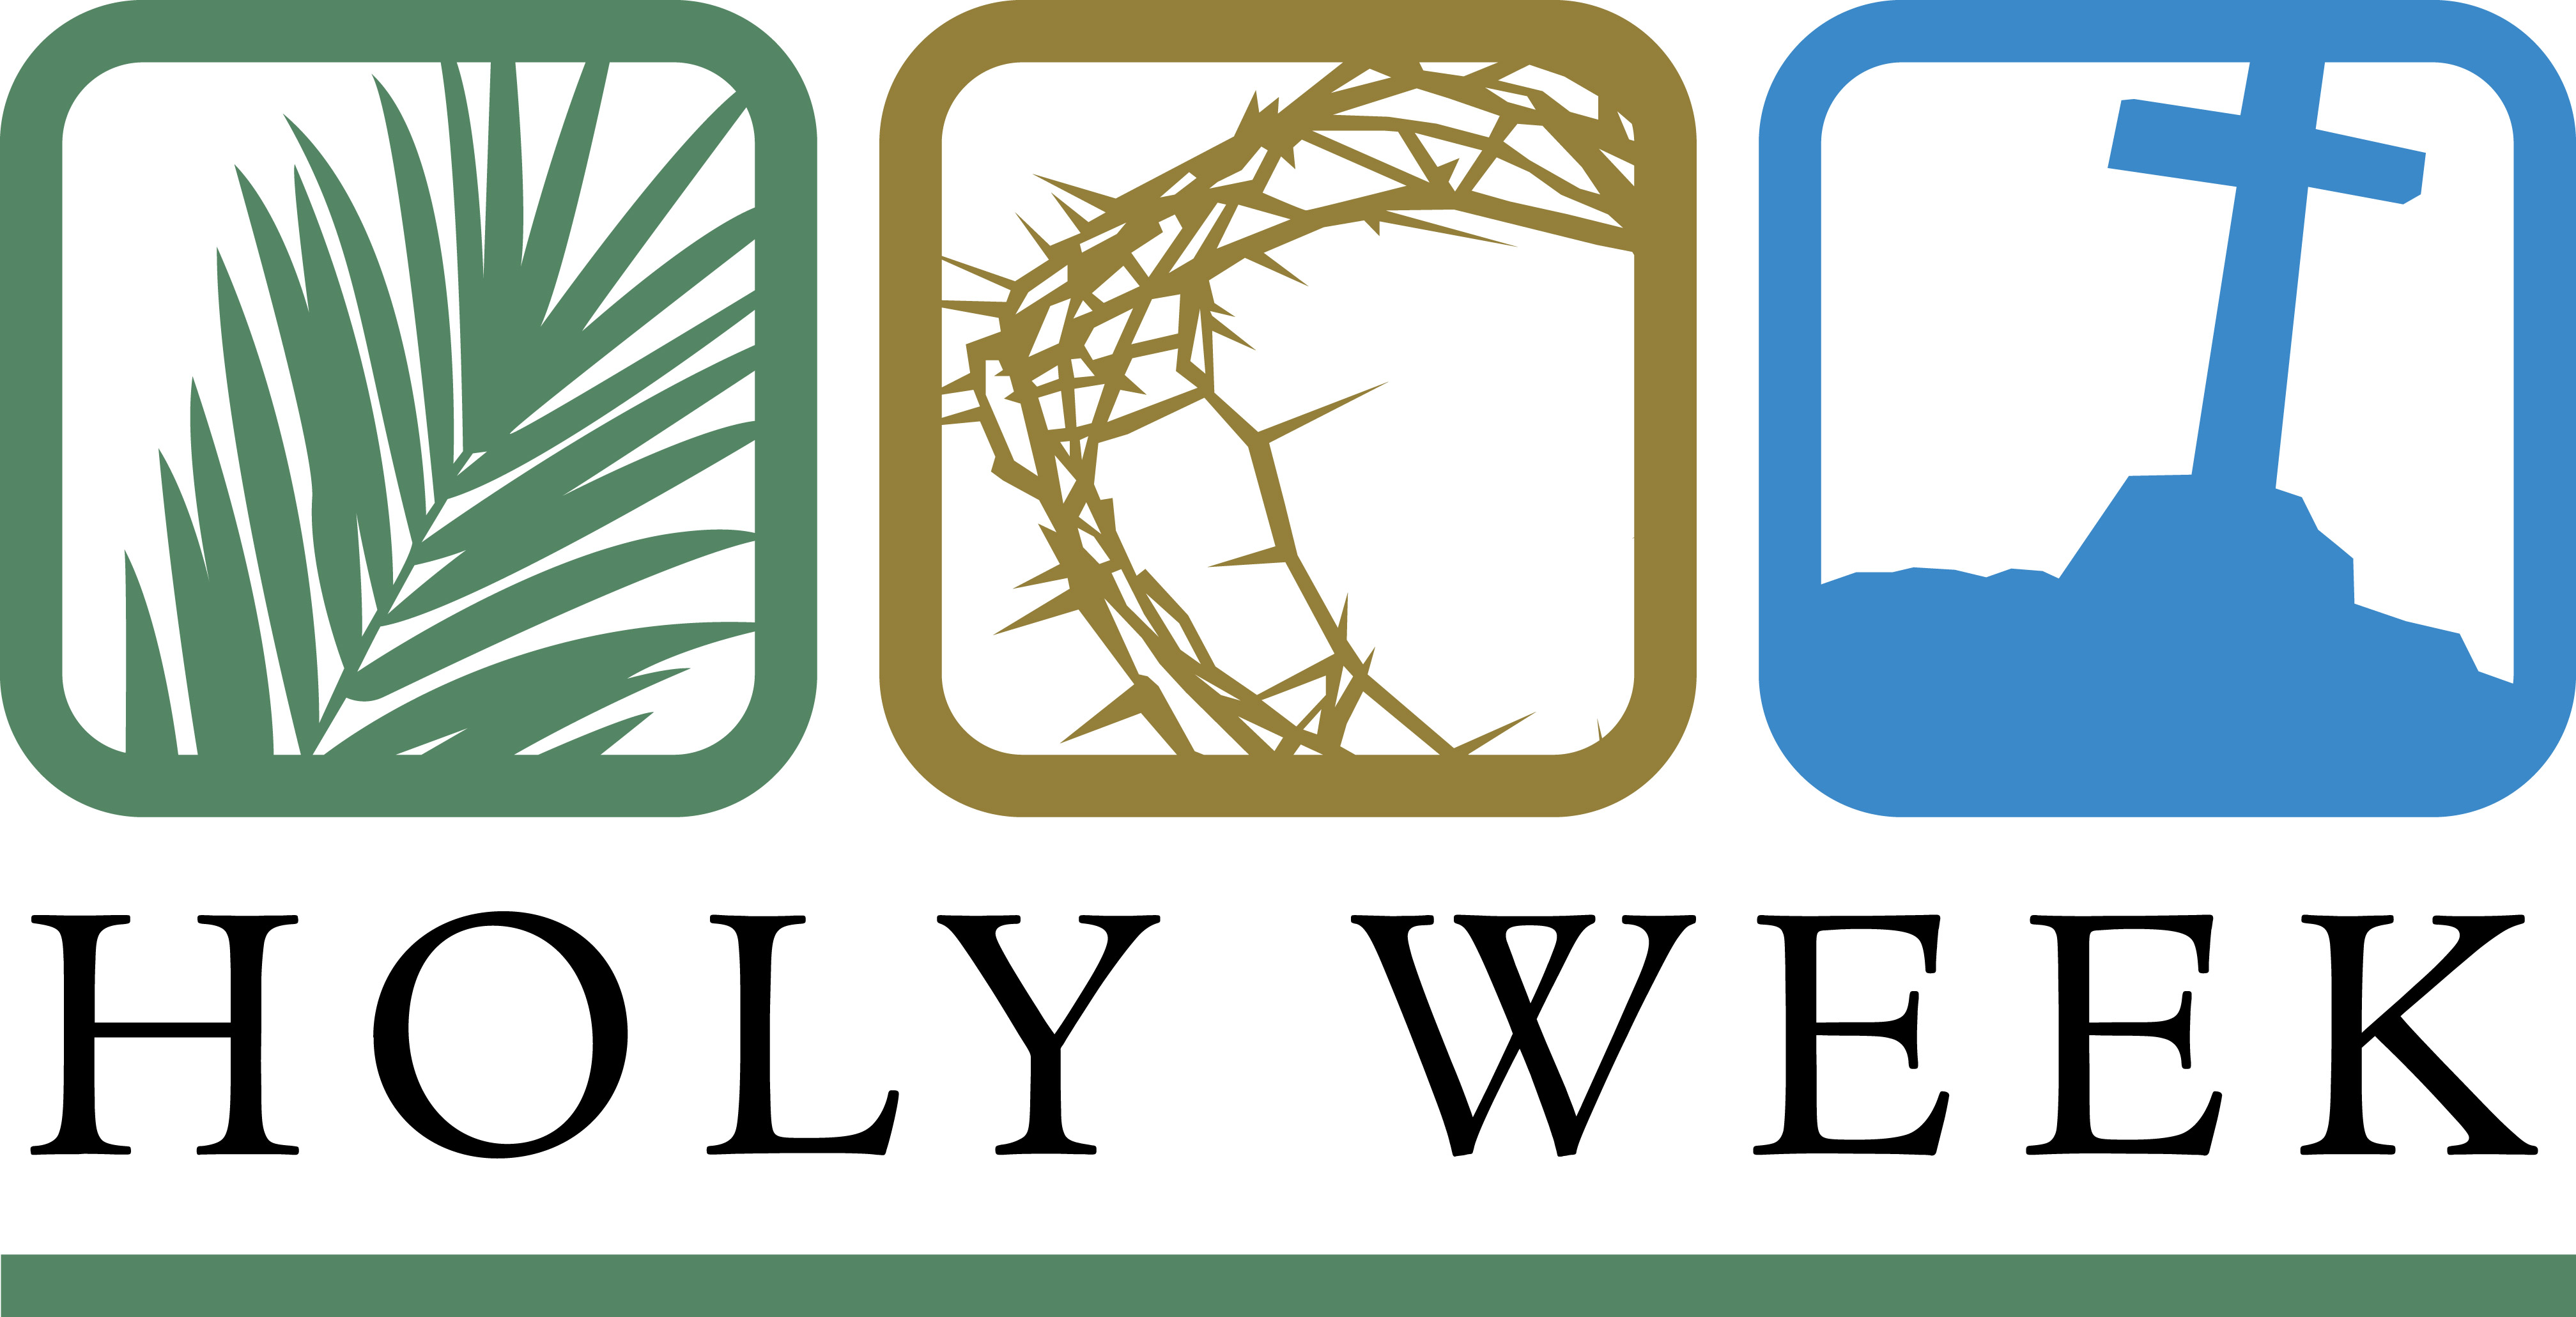 Catholic holy week clipart